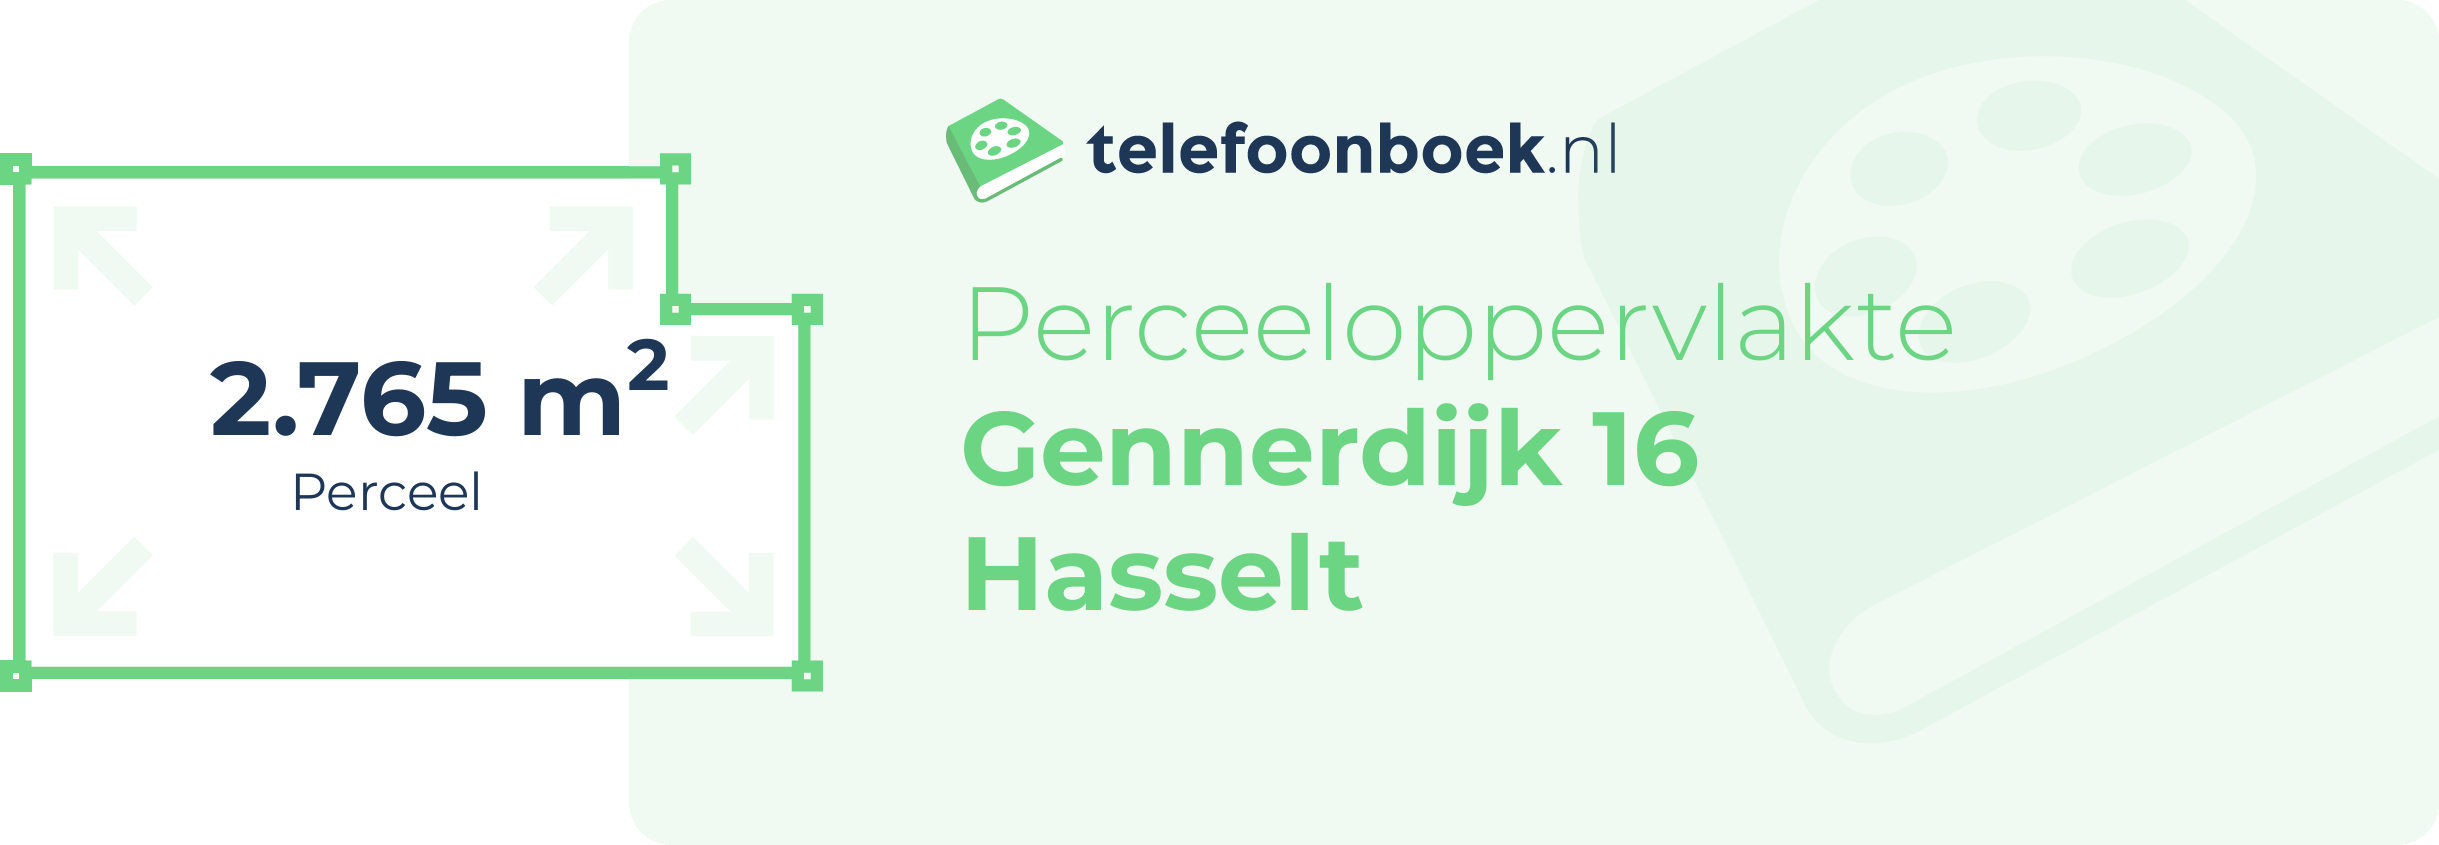 Perceeloppervlakte Gennerdijk 16 Hasselt